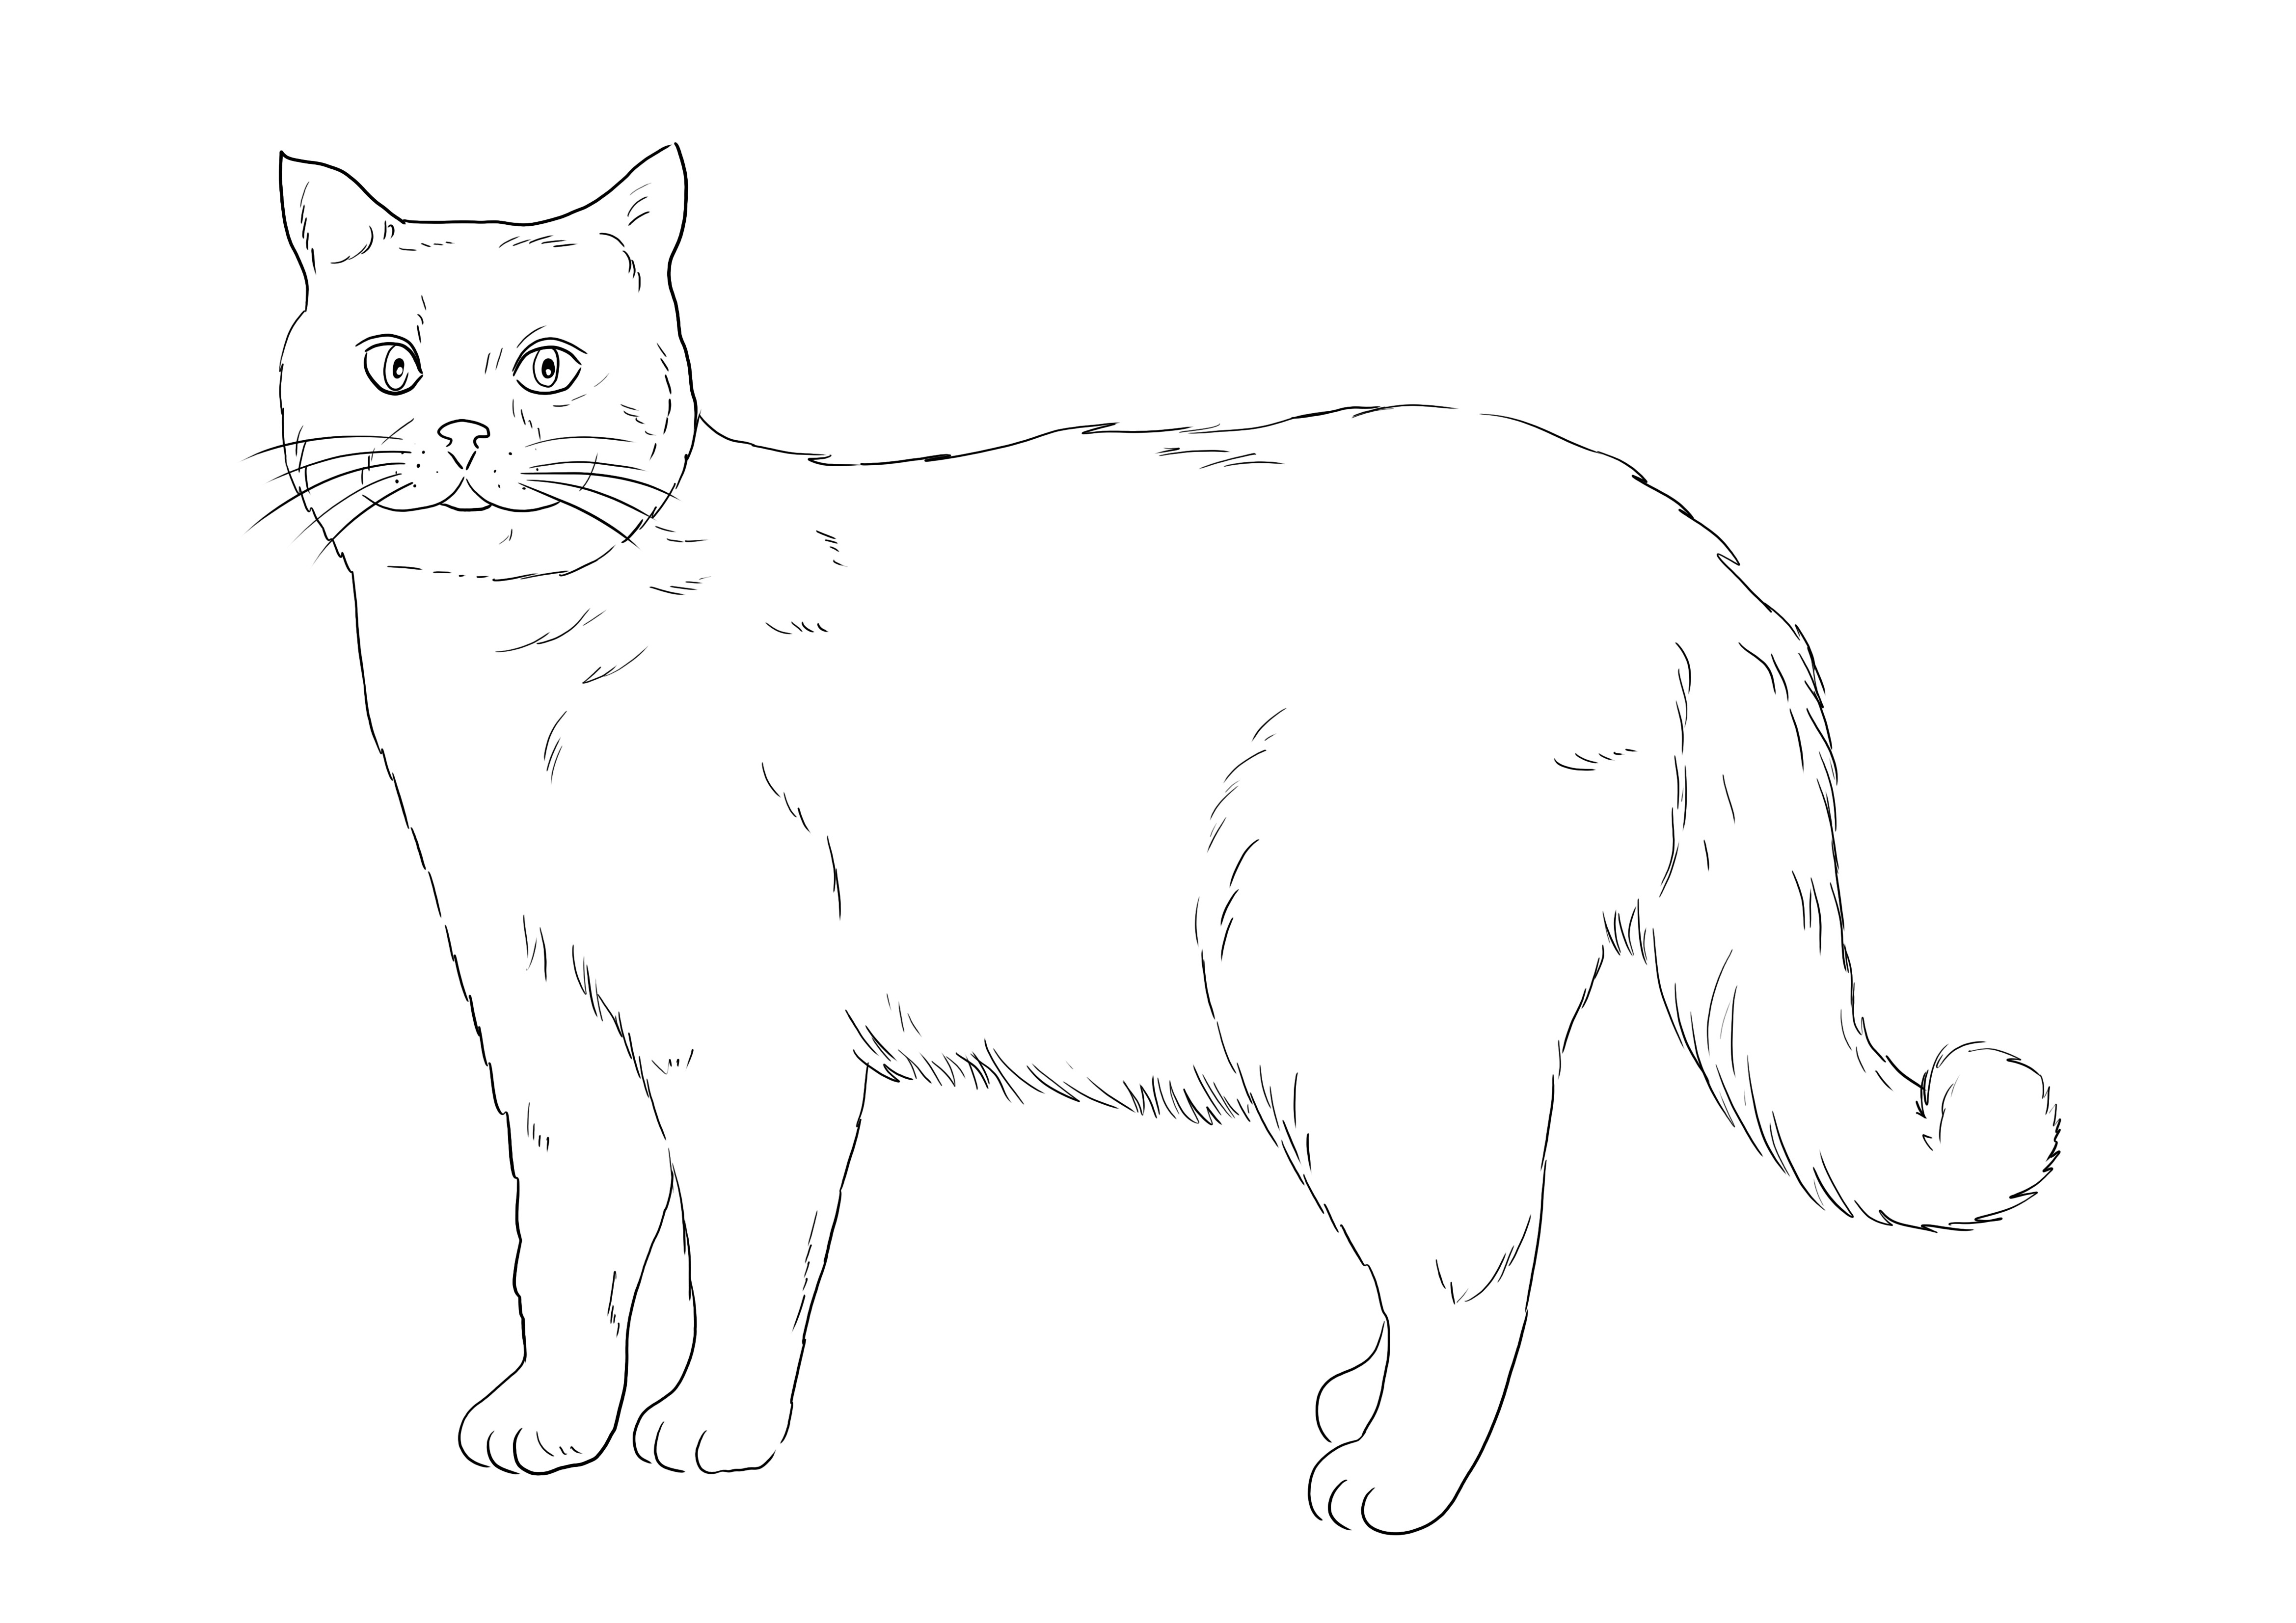 Ilmainen brittiläisen lyhytkarvaisen kissan värjäämiseen tulostettavaksi tai tallennettavaksi myöhempää käyttöä ja väritystä varten